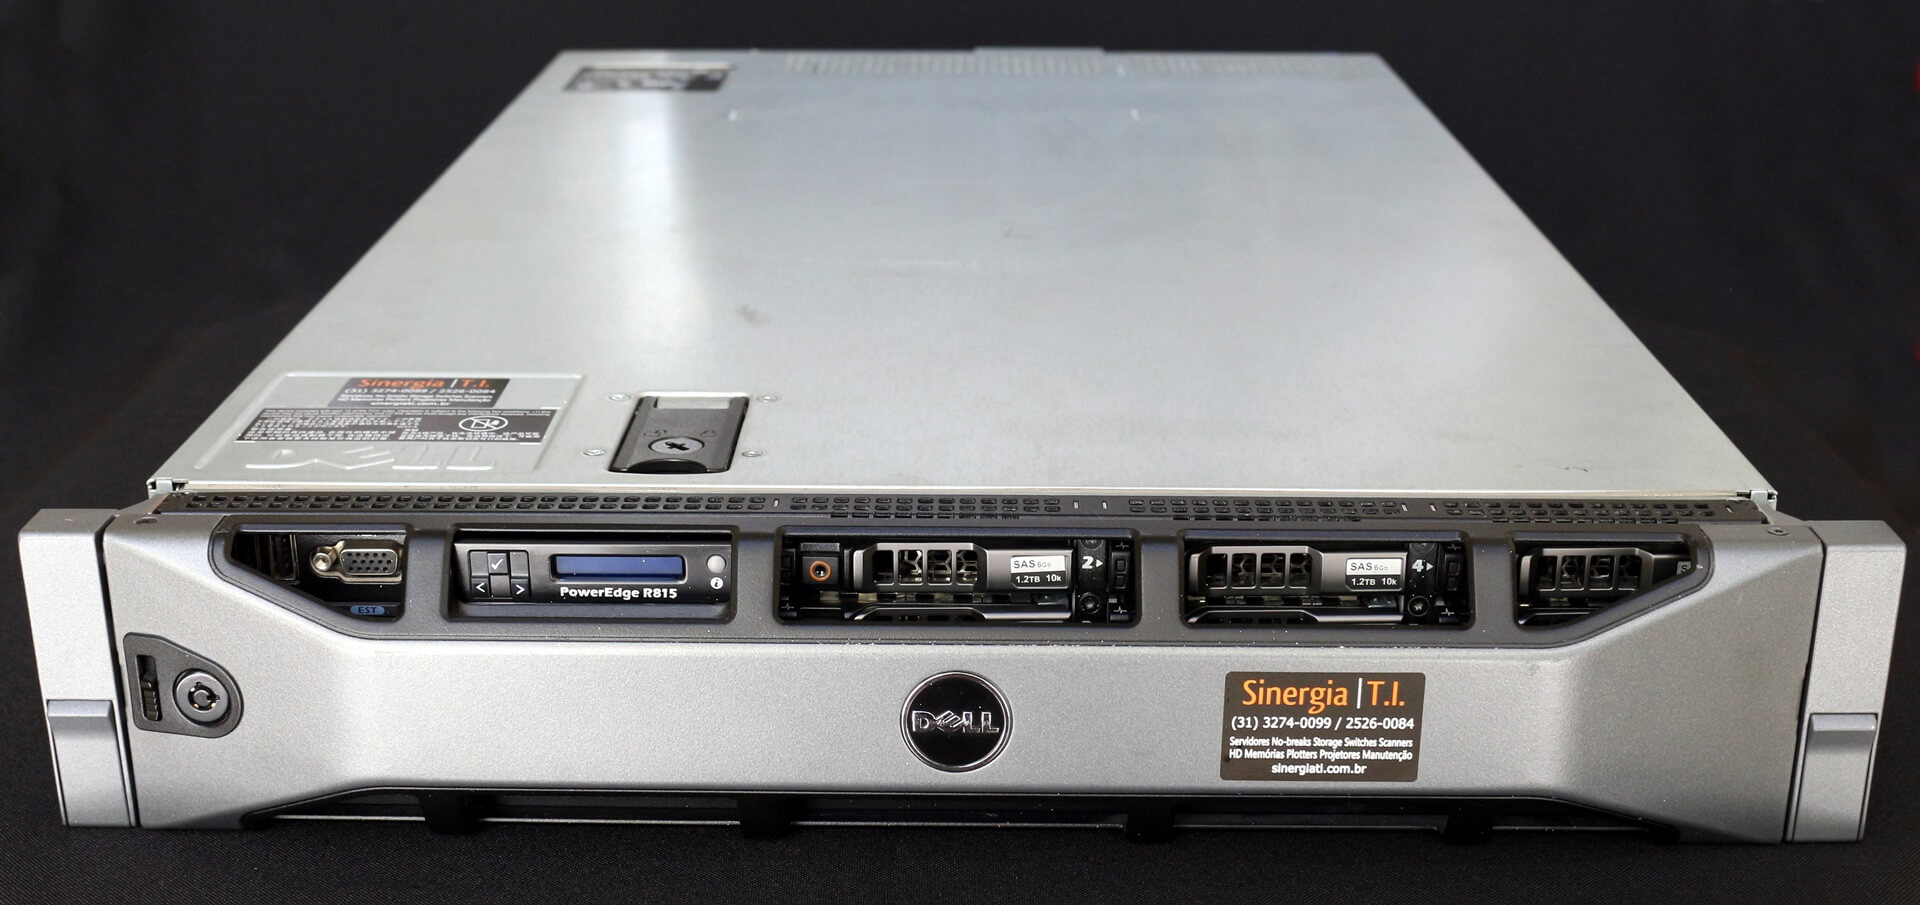 R815 Servidor Dell PowerEdge 2U Ideal para Virtualização e Banco de Dados Rack 4 X 16 Cores - Seminovo capa